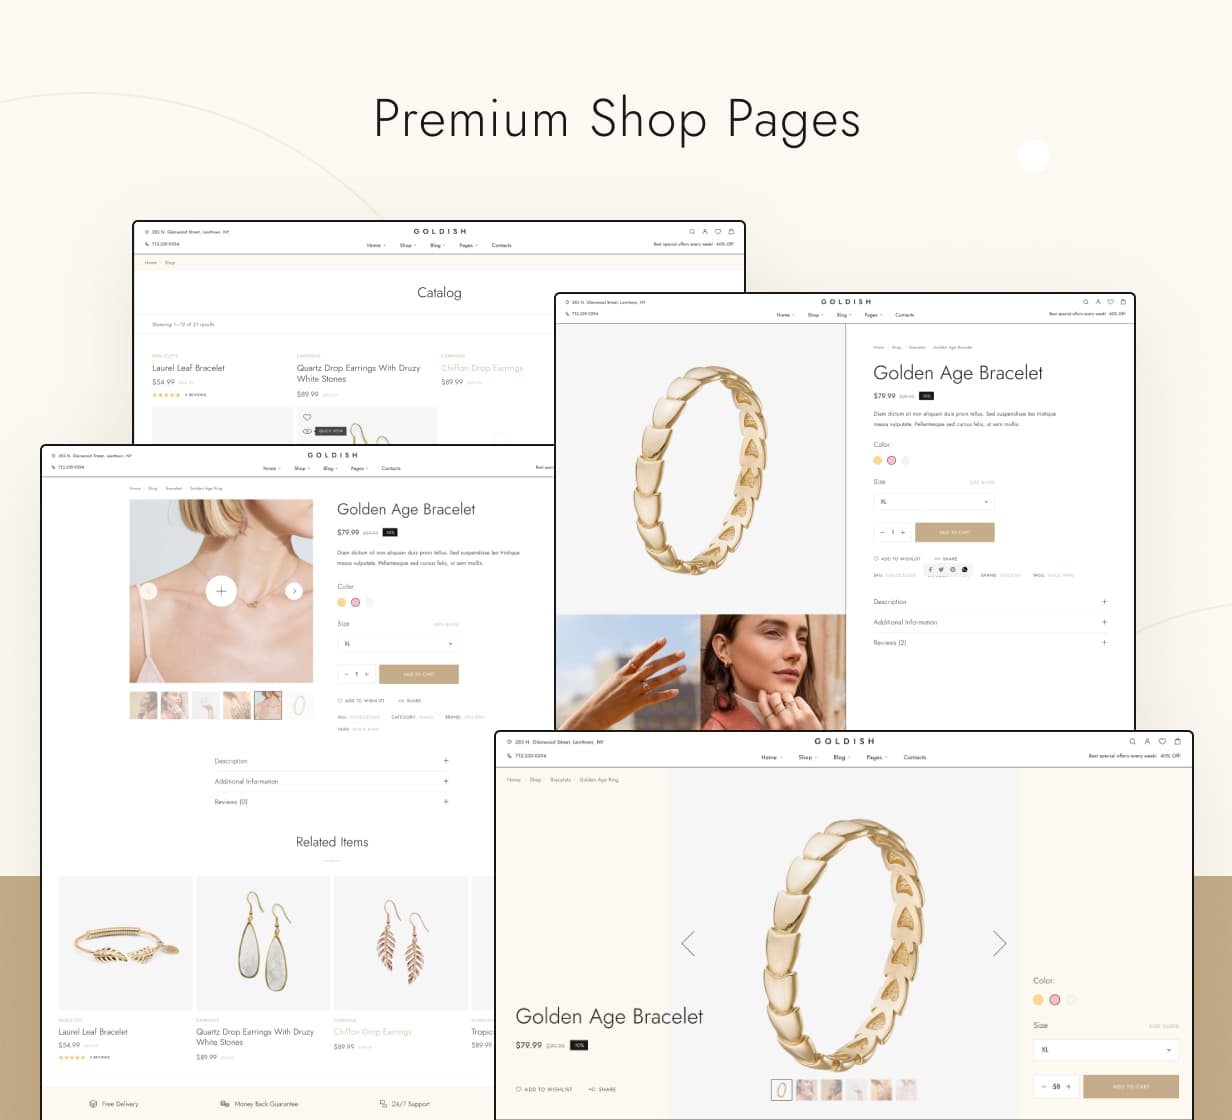 Goldish - Premium-Shop-Seiten - Sauberer und minimalistischer Stil